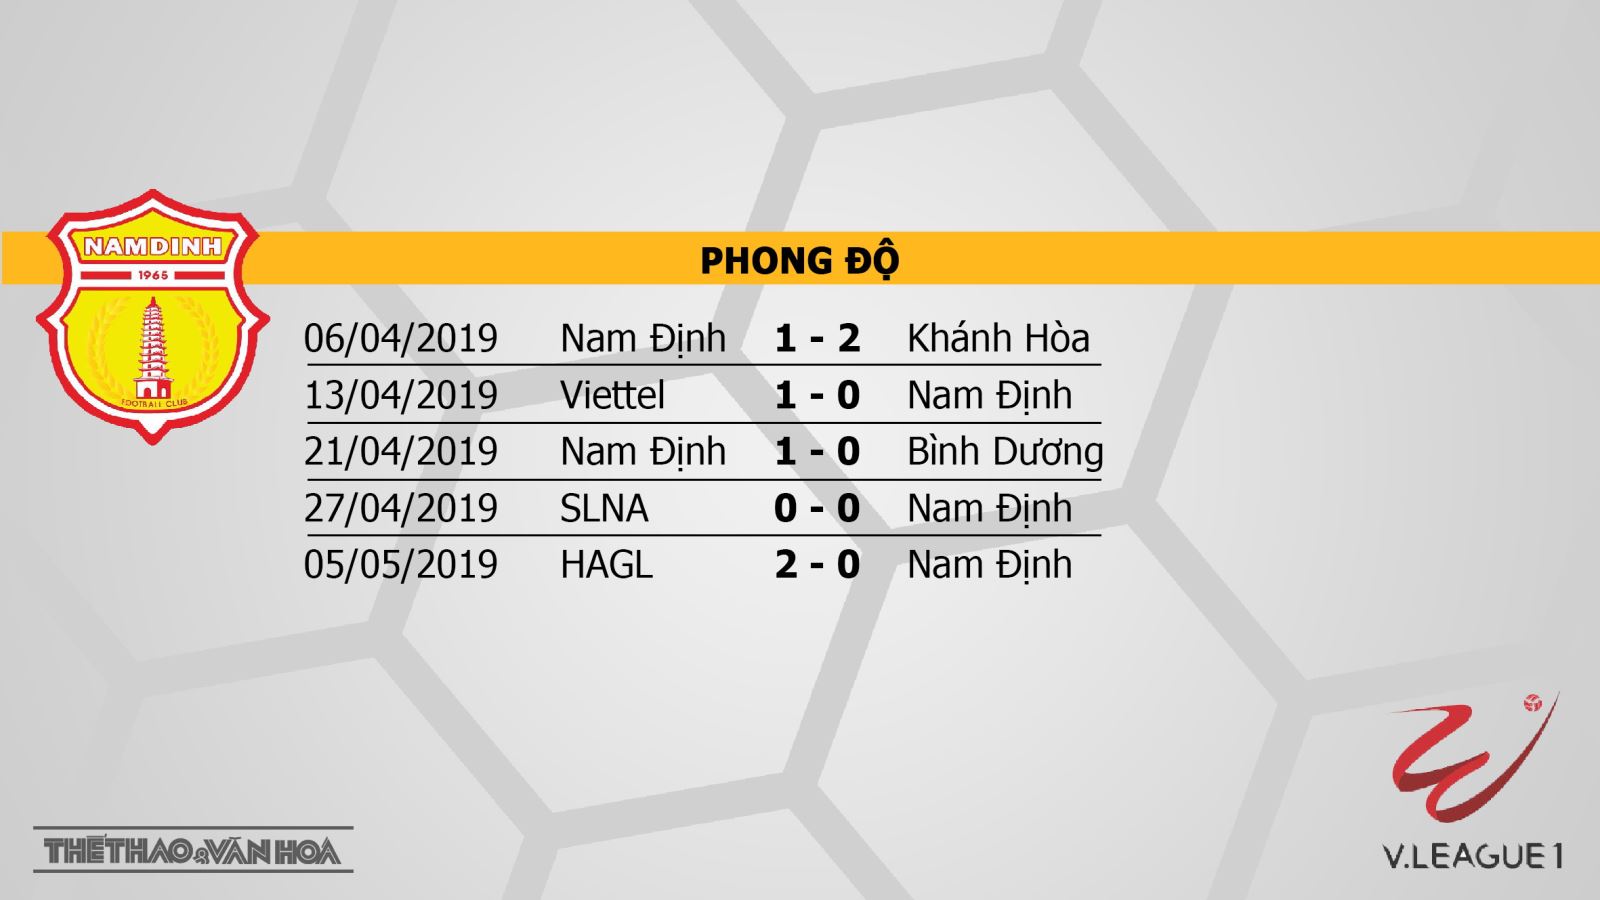 Nam Định vs Than Quảng Ninh, Nam Định, Than Quảng Ninh, truc tiep bong da, trực tiếp bóng đá, truc tiep Nam Dinh, truc tiep Nam Định vs Than Quang Ninh, v league 2019, truc tiep v league, BDTV, FPT Play